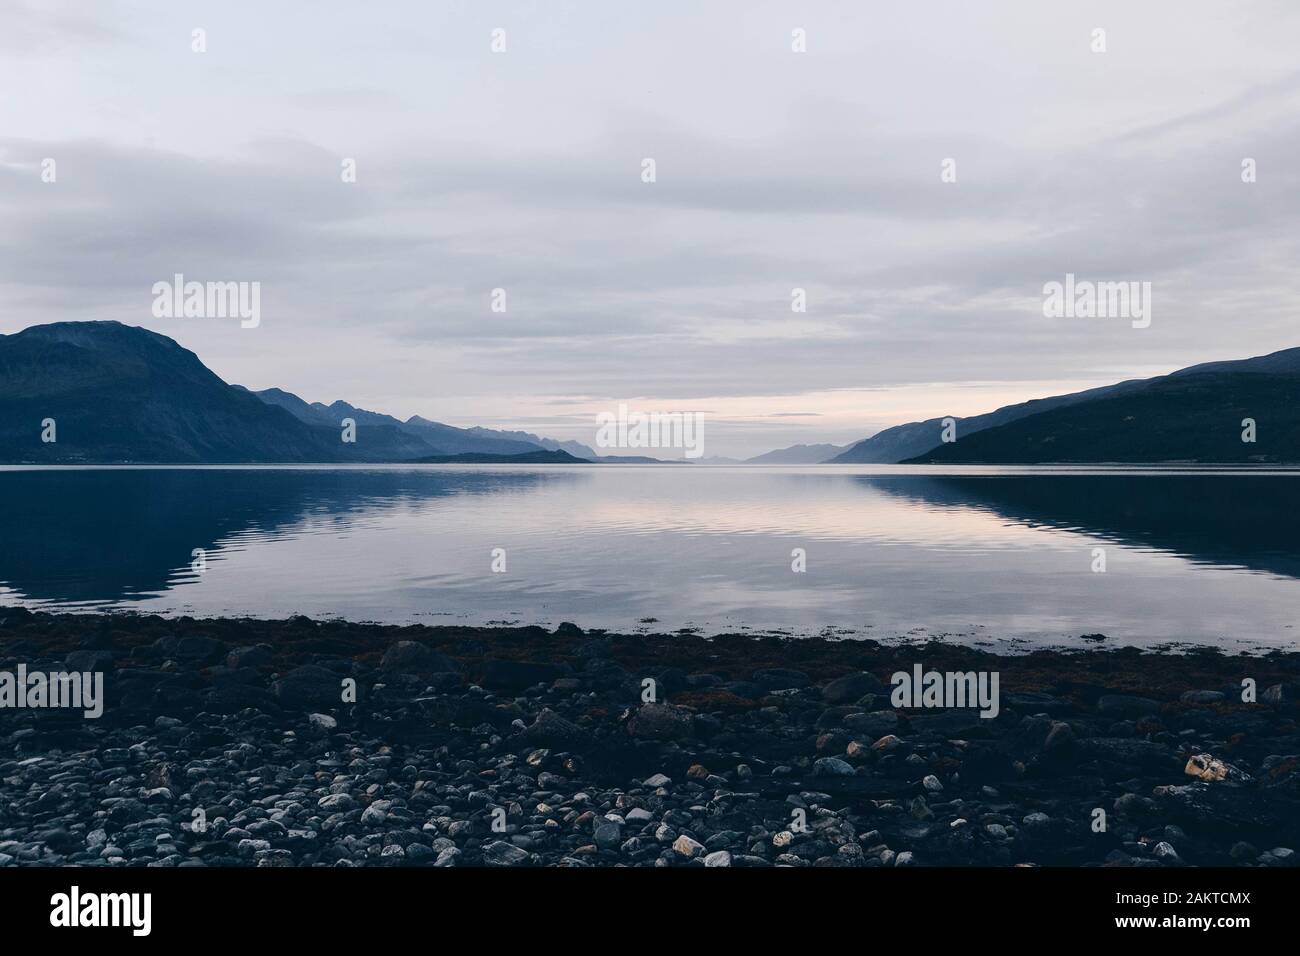 Las montañas y el agua en el fiordo o fiordo de Noruega Foto de stock